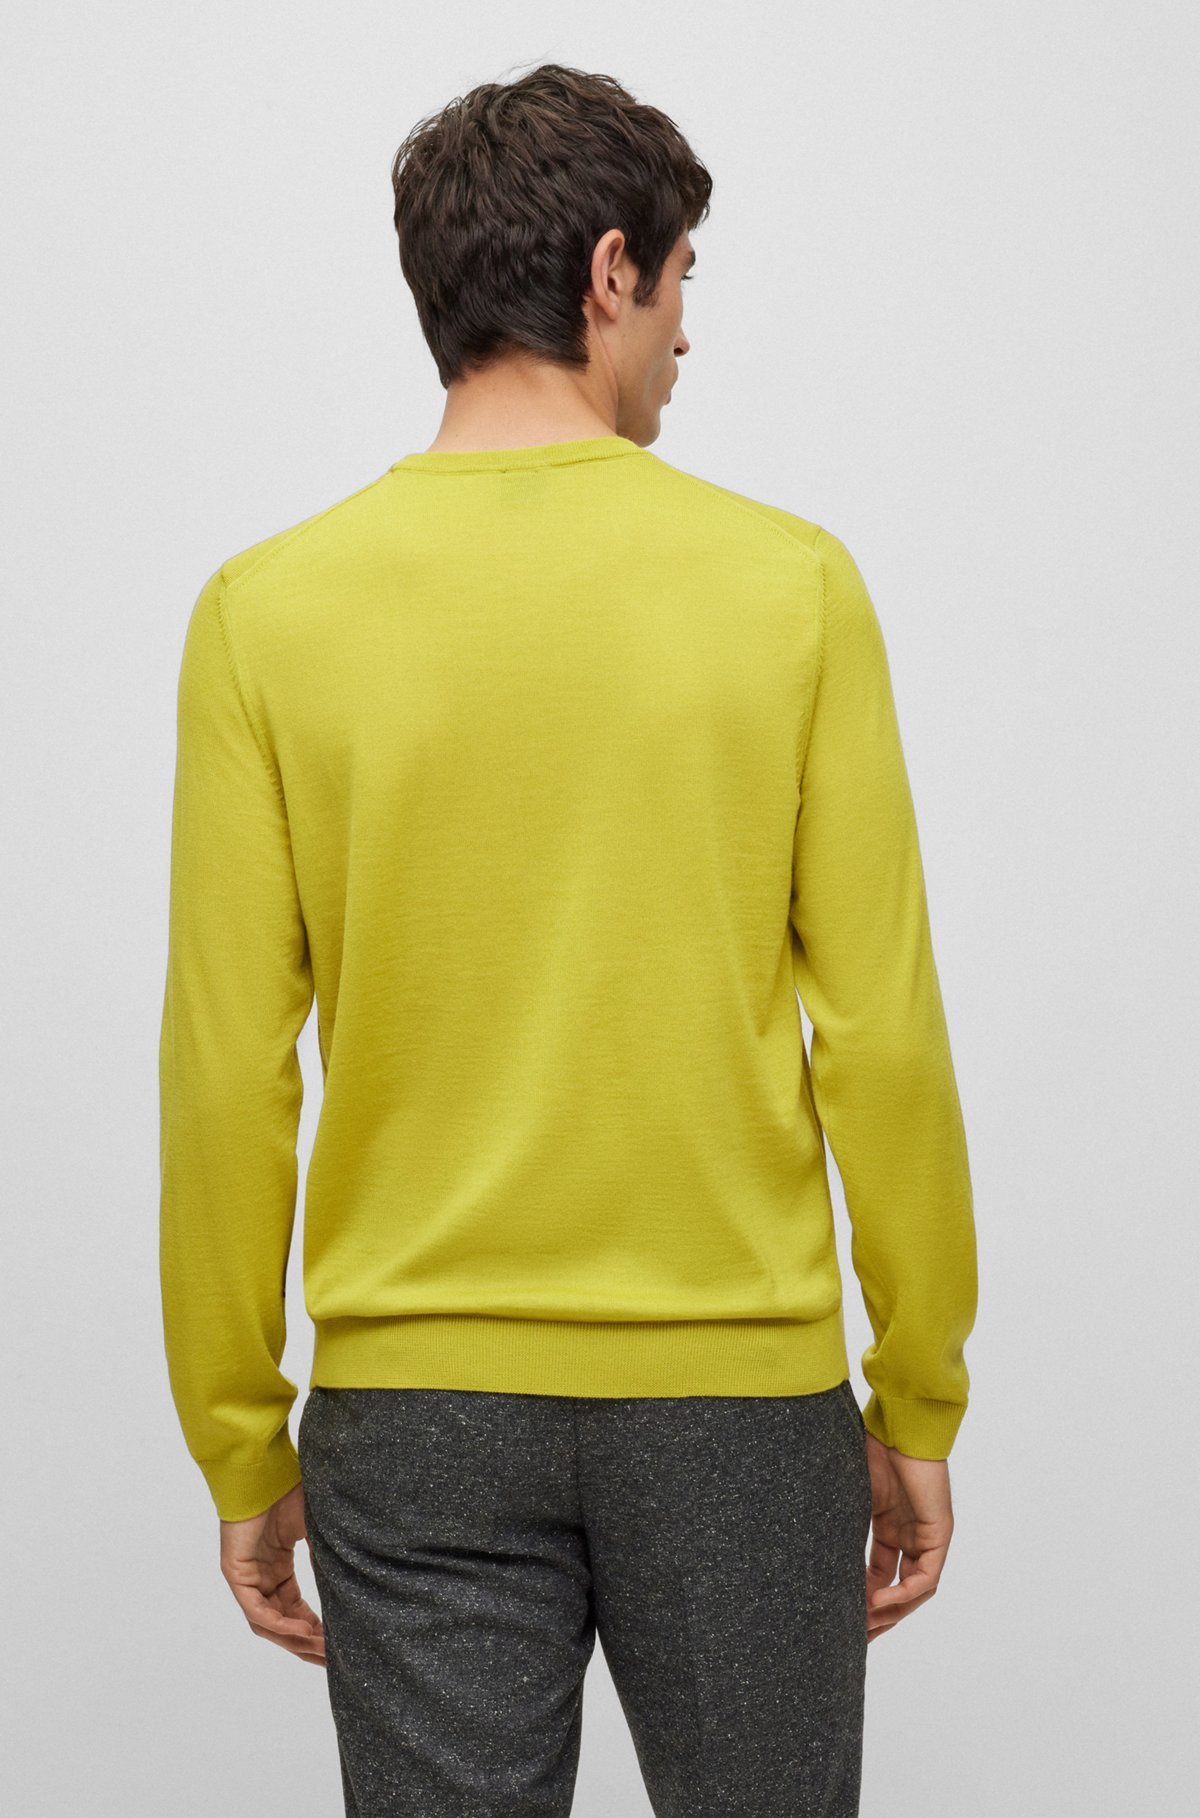 Sweater i slim fit i ny uld, Lysegrøn